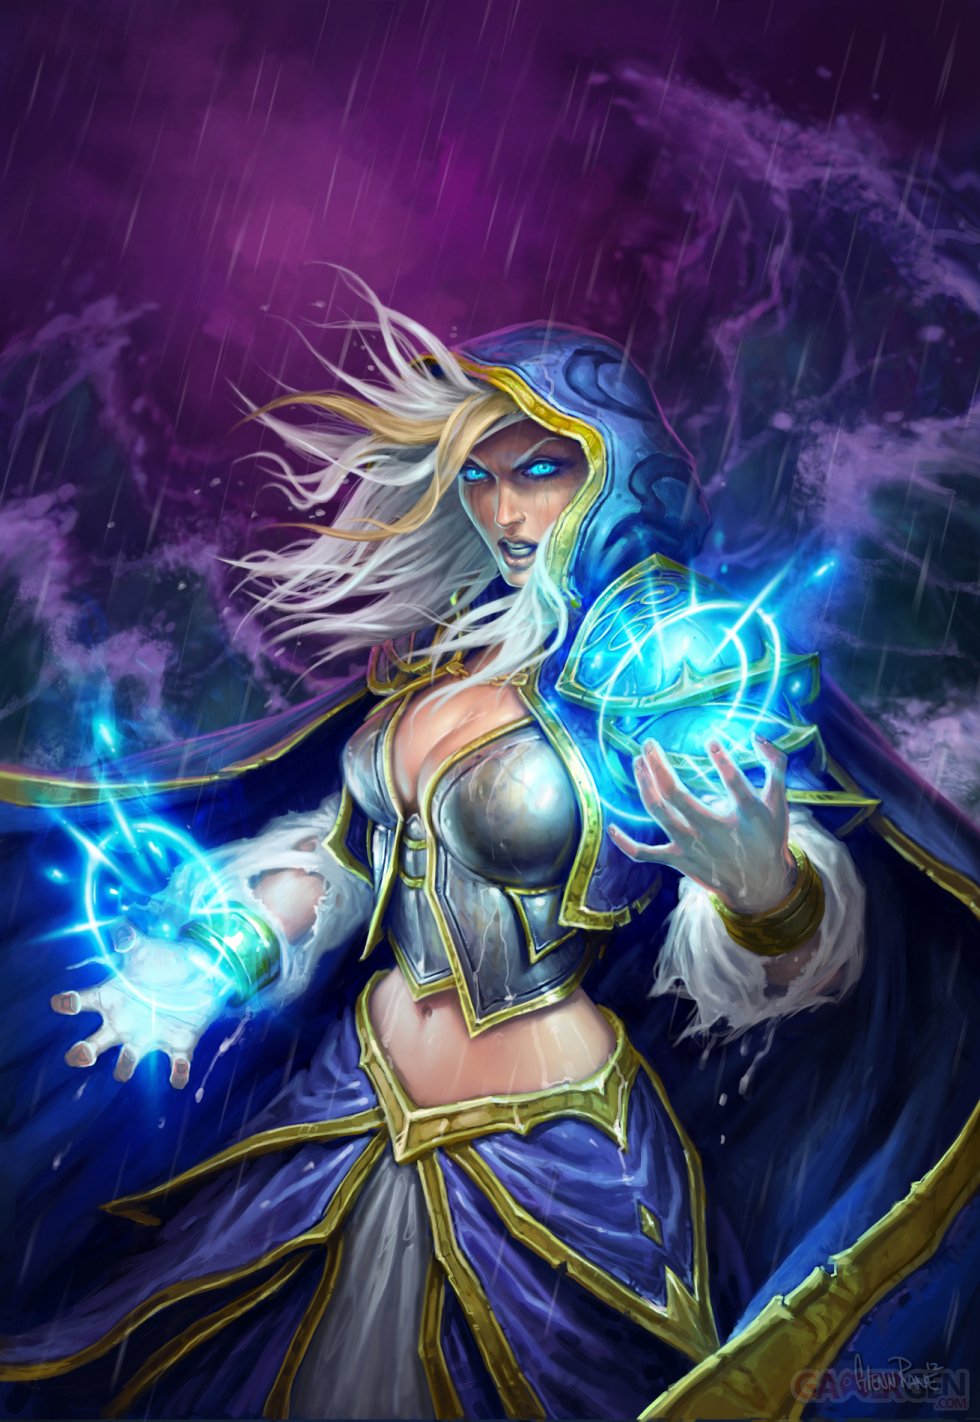 Hearthstone-Heroes-of-Warcraft_09-11-2013_artwork (6)